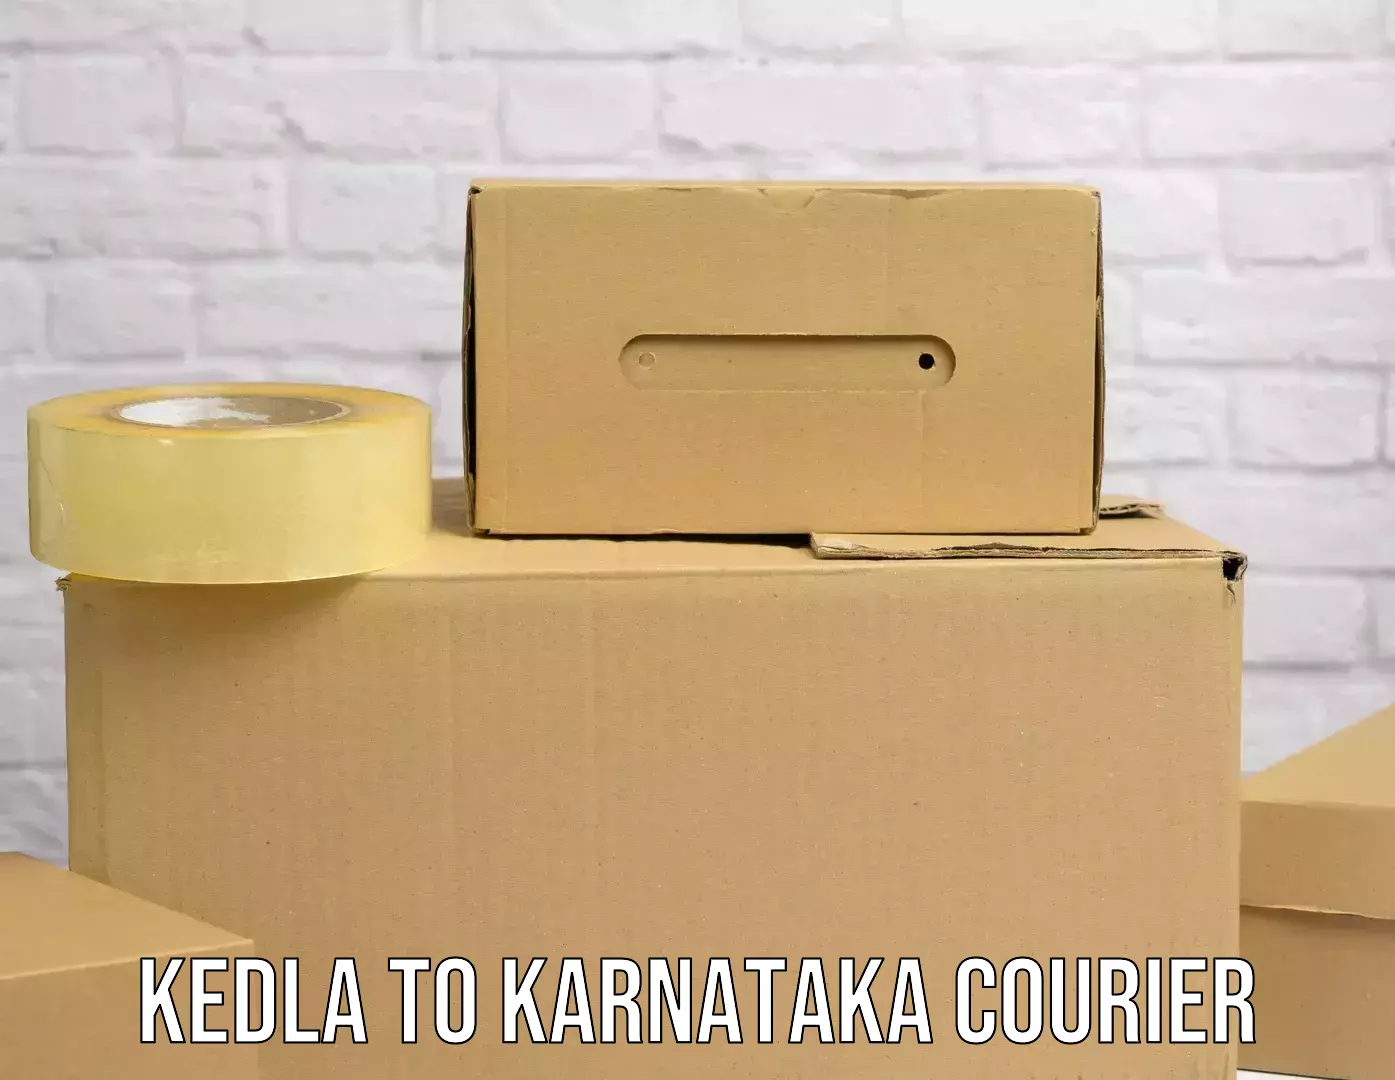 Digital courier platforms Kedla to Surathkal